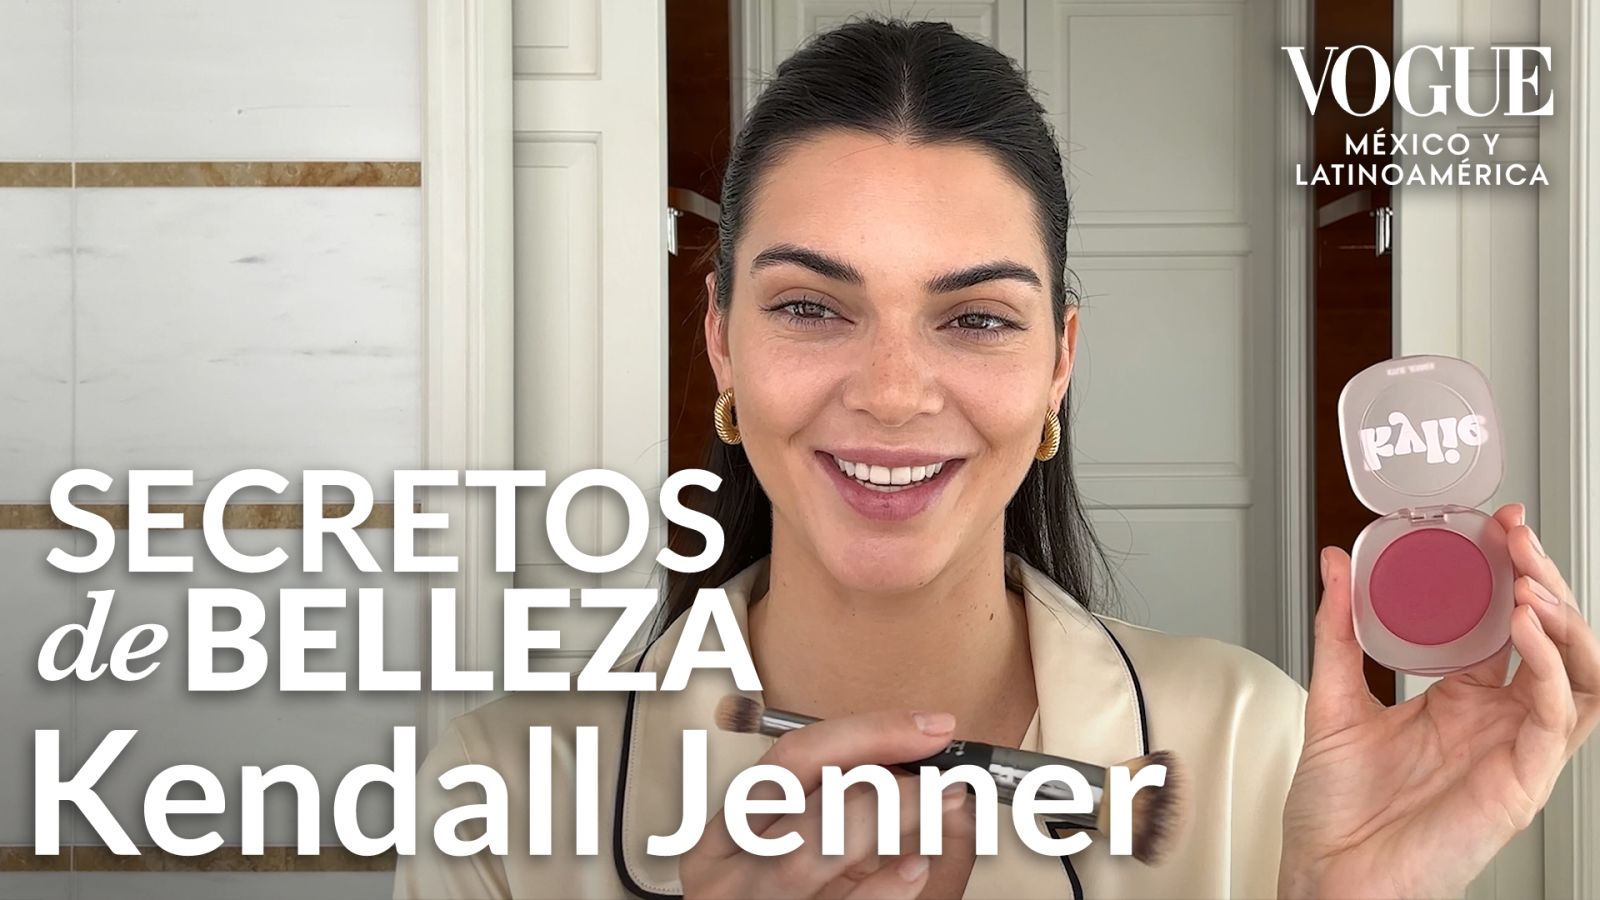 Kendall Jenner te dice cómo lograr un maquillaje primaveral